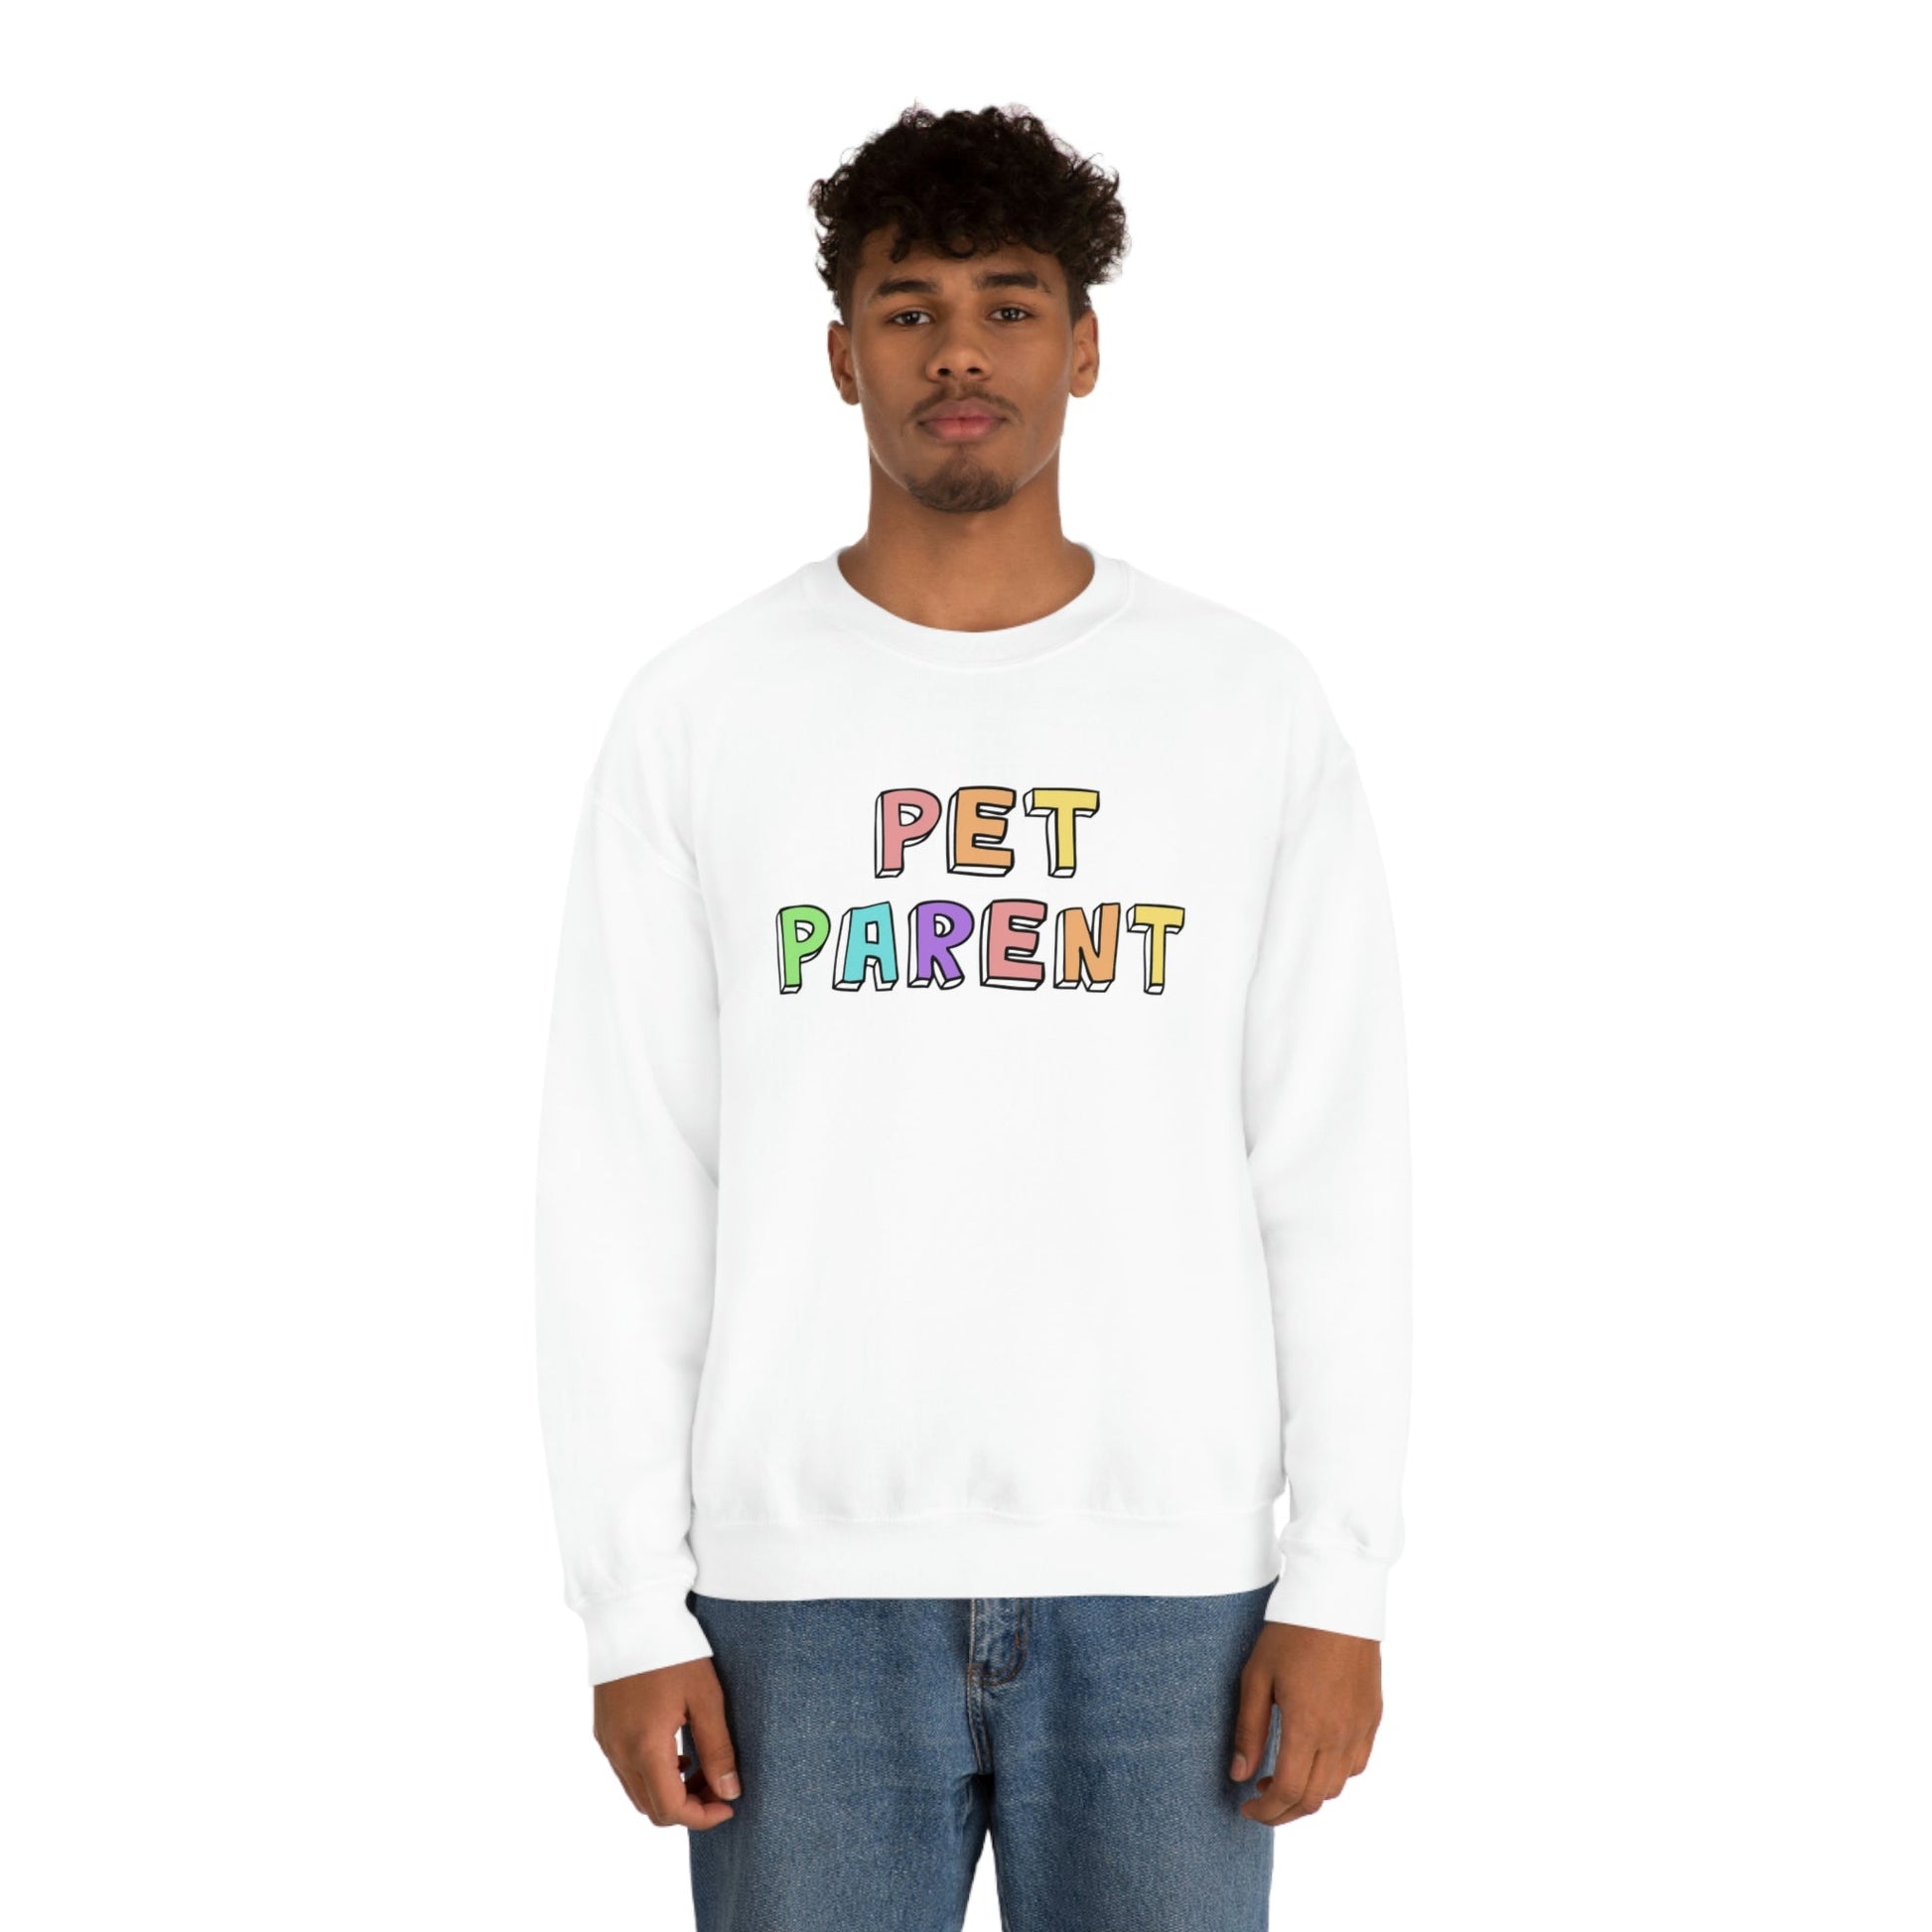 Pet Parent | Crewneck Sweatshirt - Detezi Designs-33166292777700828101